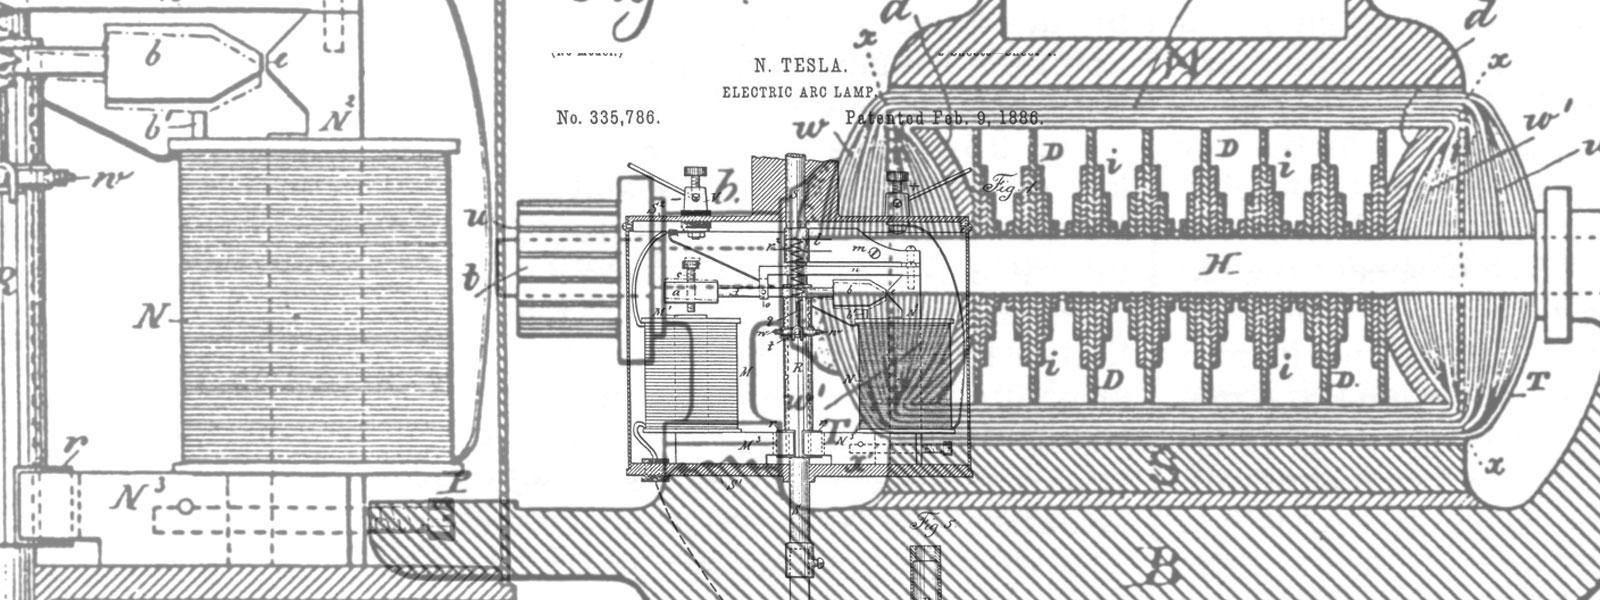 Tesla patent drawings